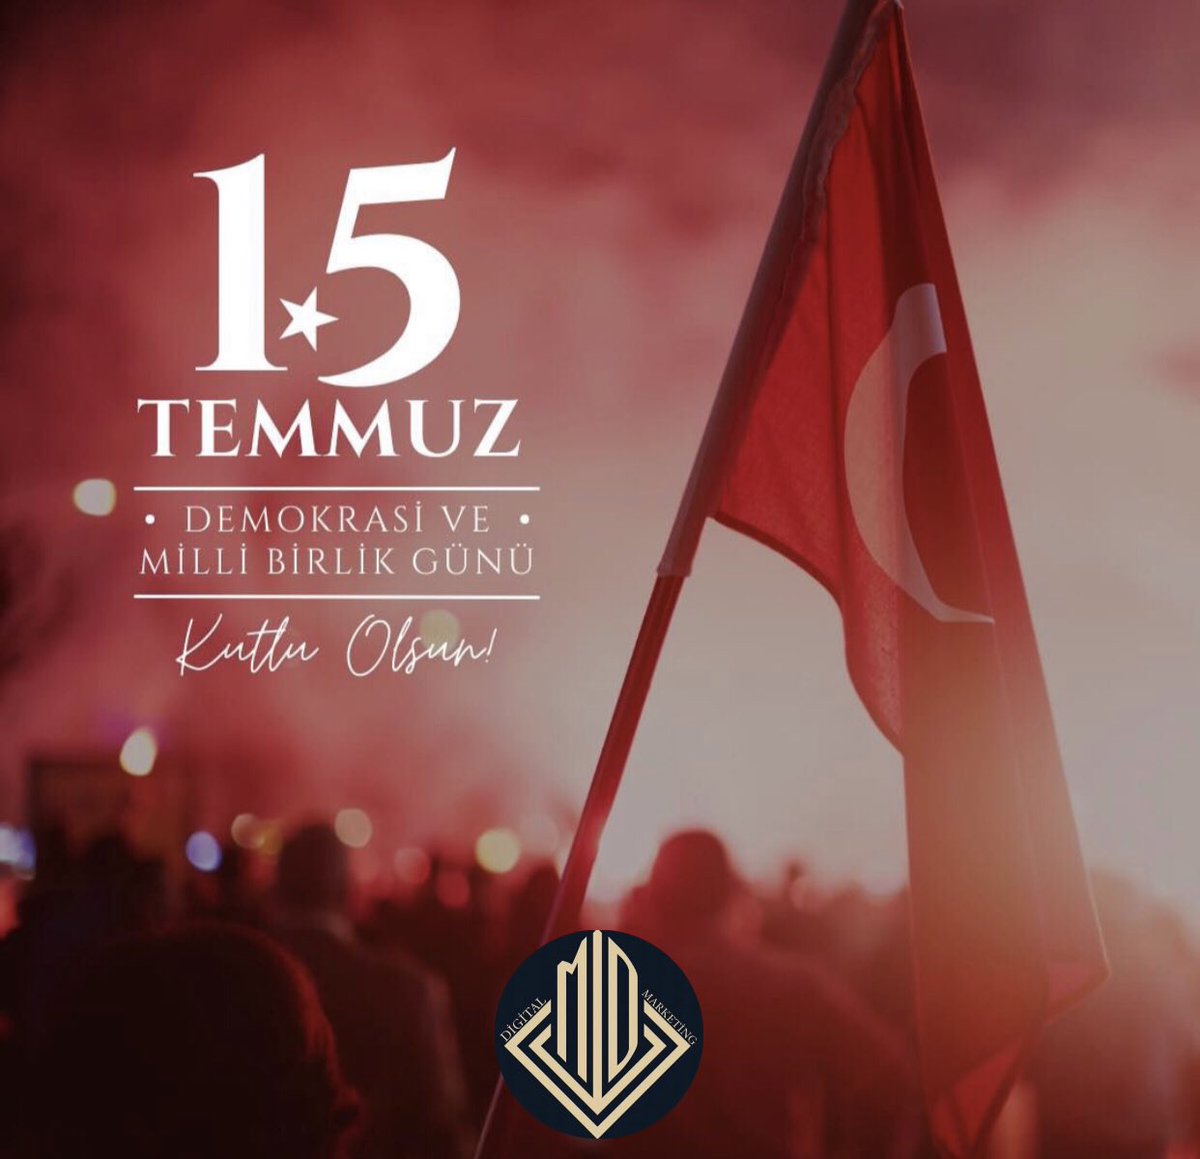 15 Temmuz Demokrasi ve Millî Birlik Günü… Aziz şehitlerimizi rahmetle anıyor, kahraman gazilerimize şükranlarımızı sunuyoruz.🇹🇷 #15Temmuz